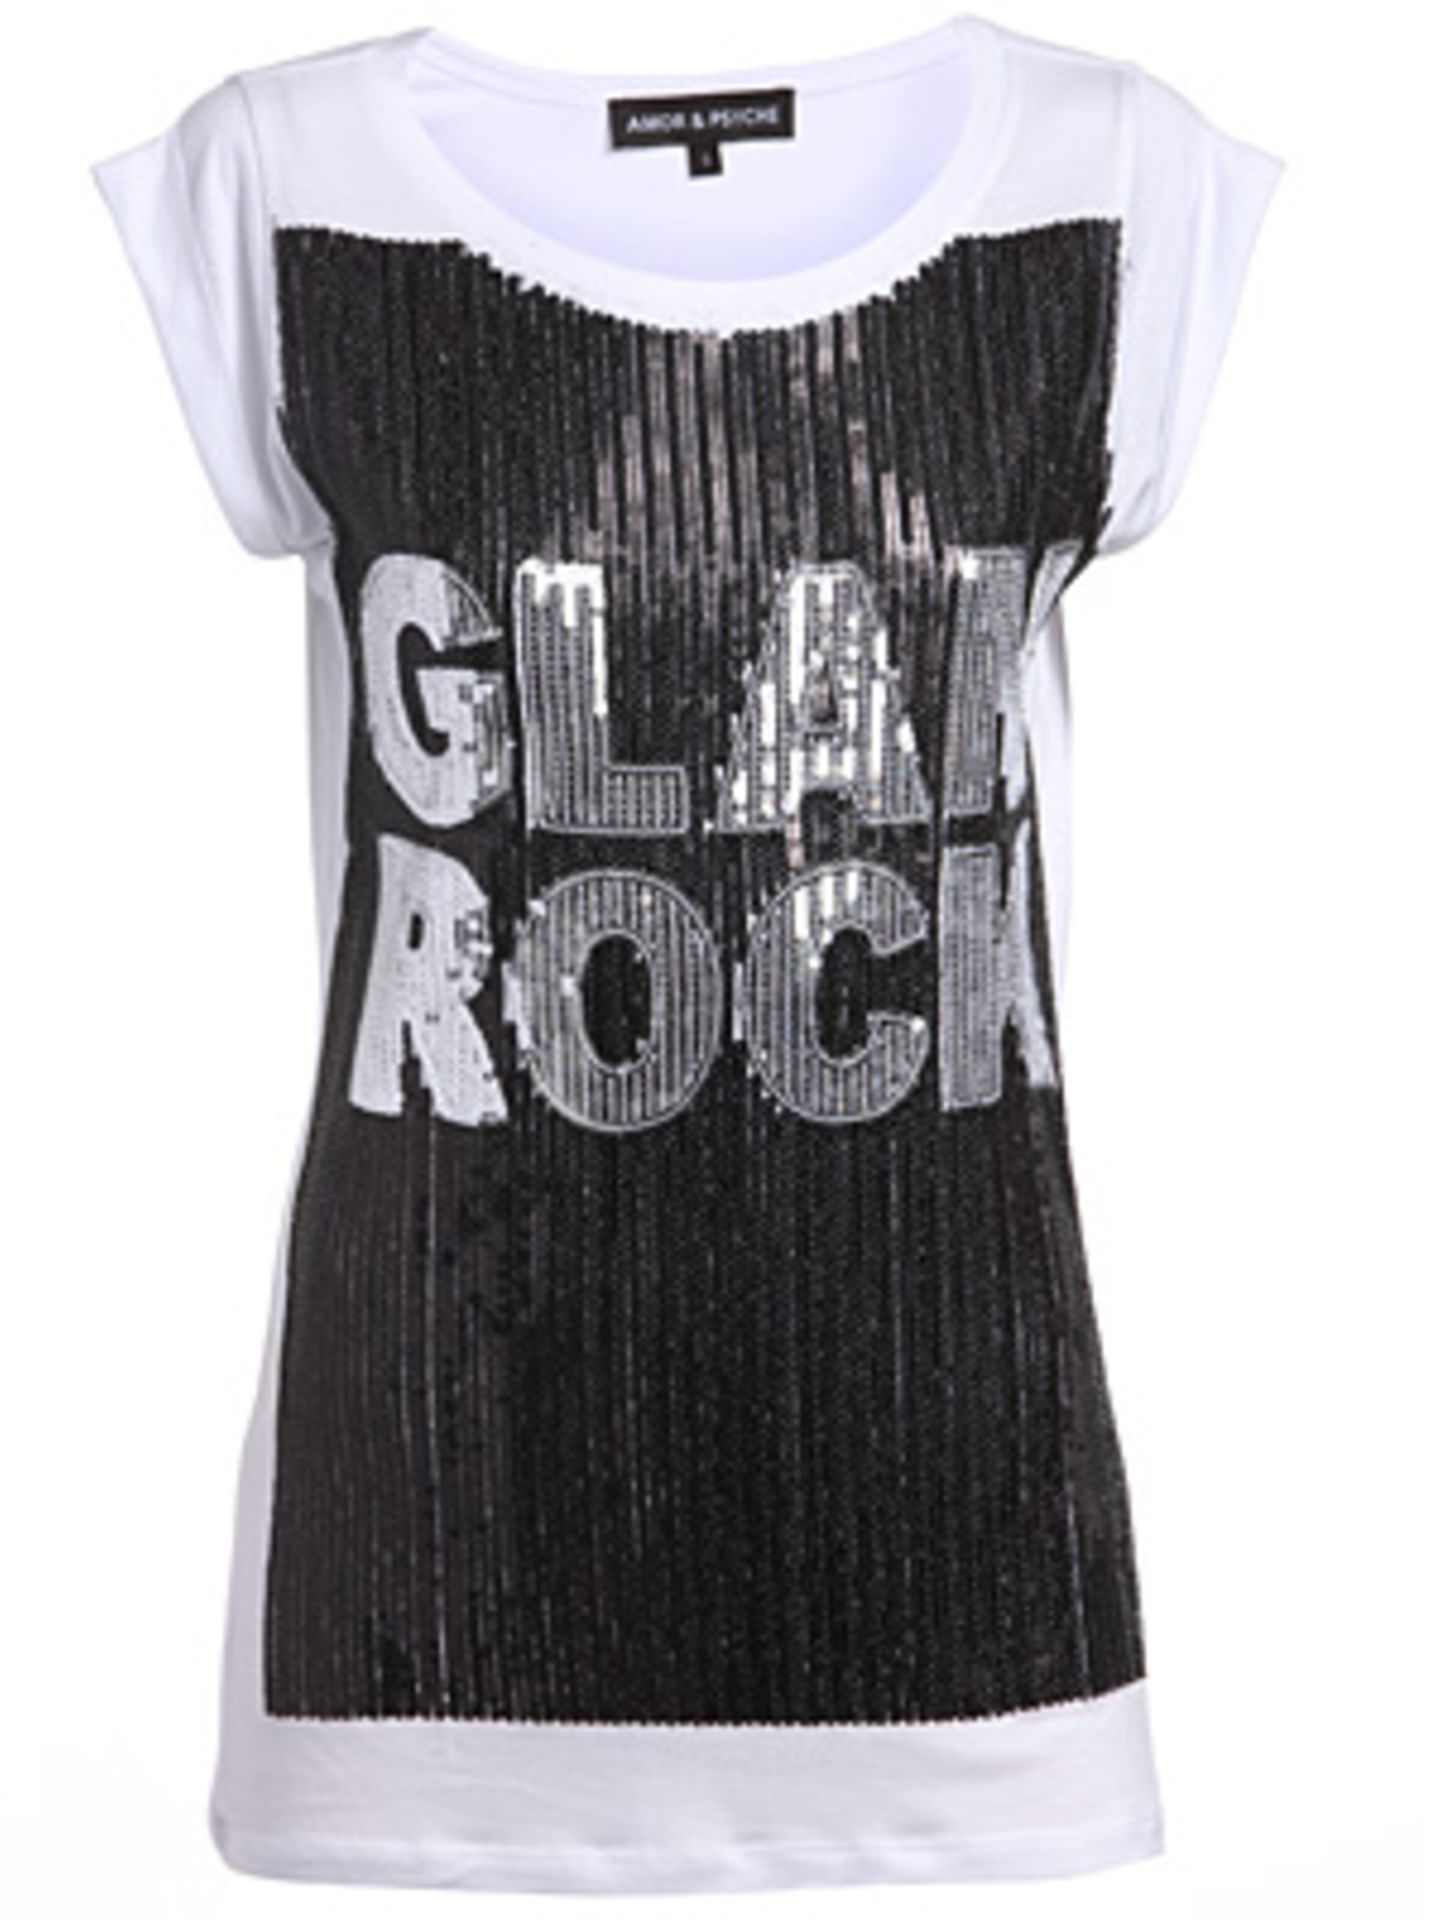 T-Shirt mit Pailletten und "Glam Rock" Schriftzug von Amor & Psyche, um 170 Euro